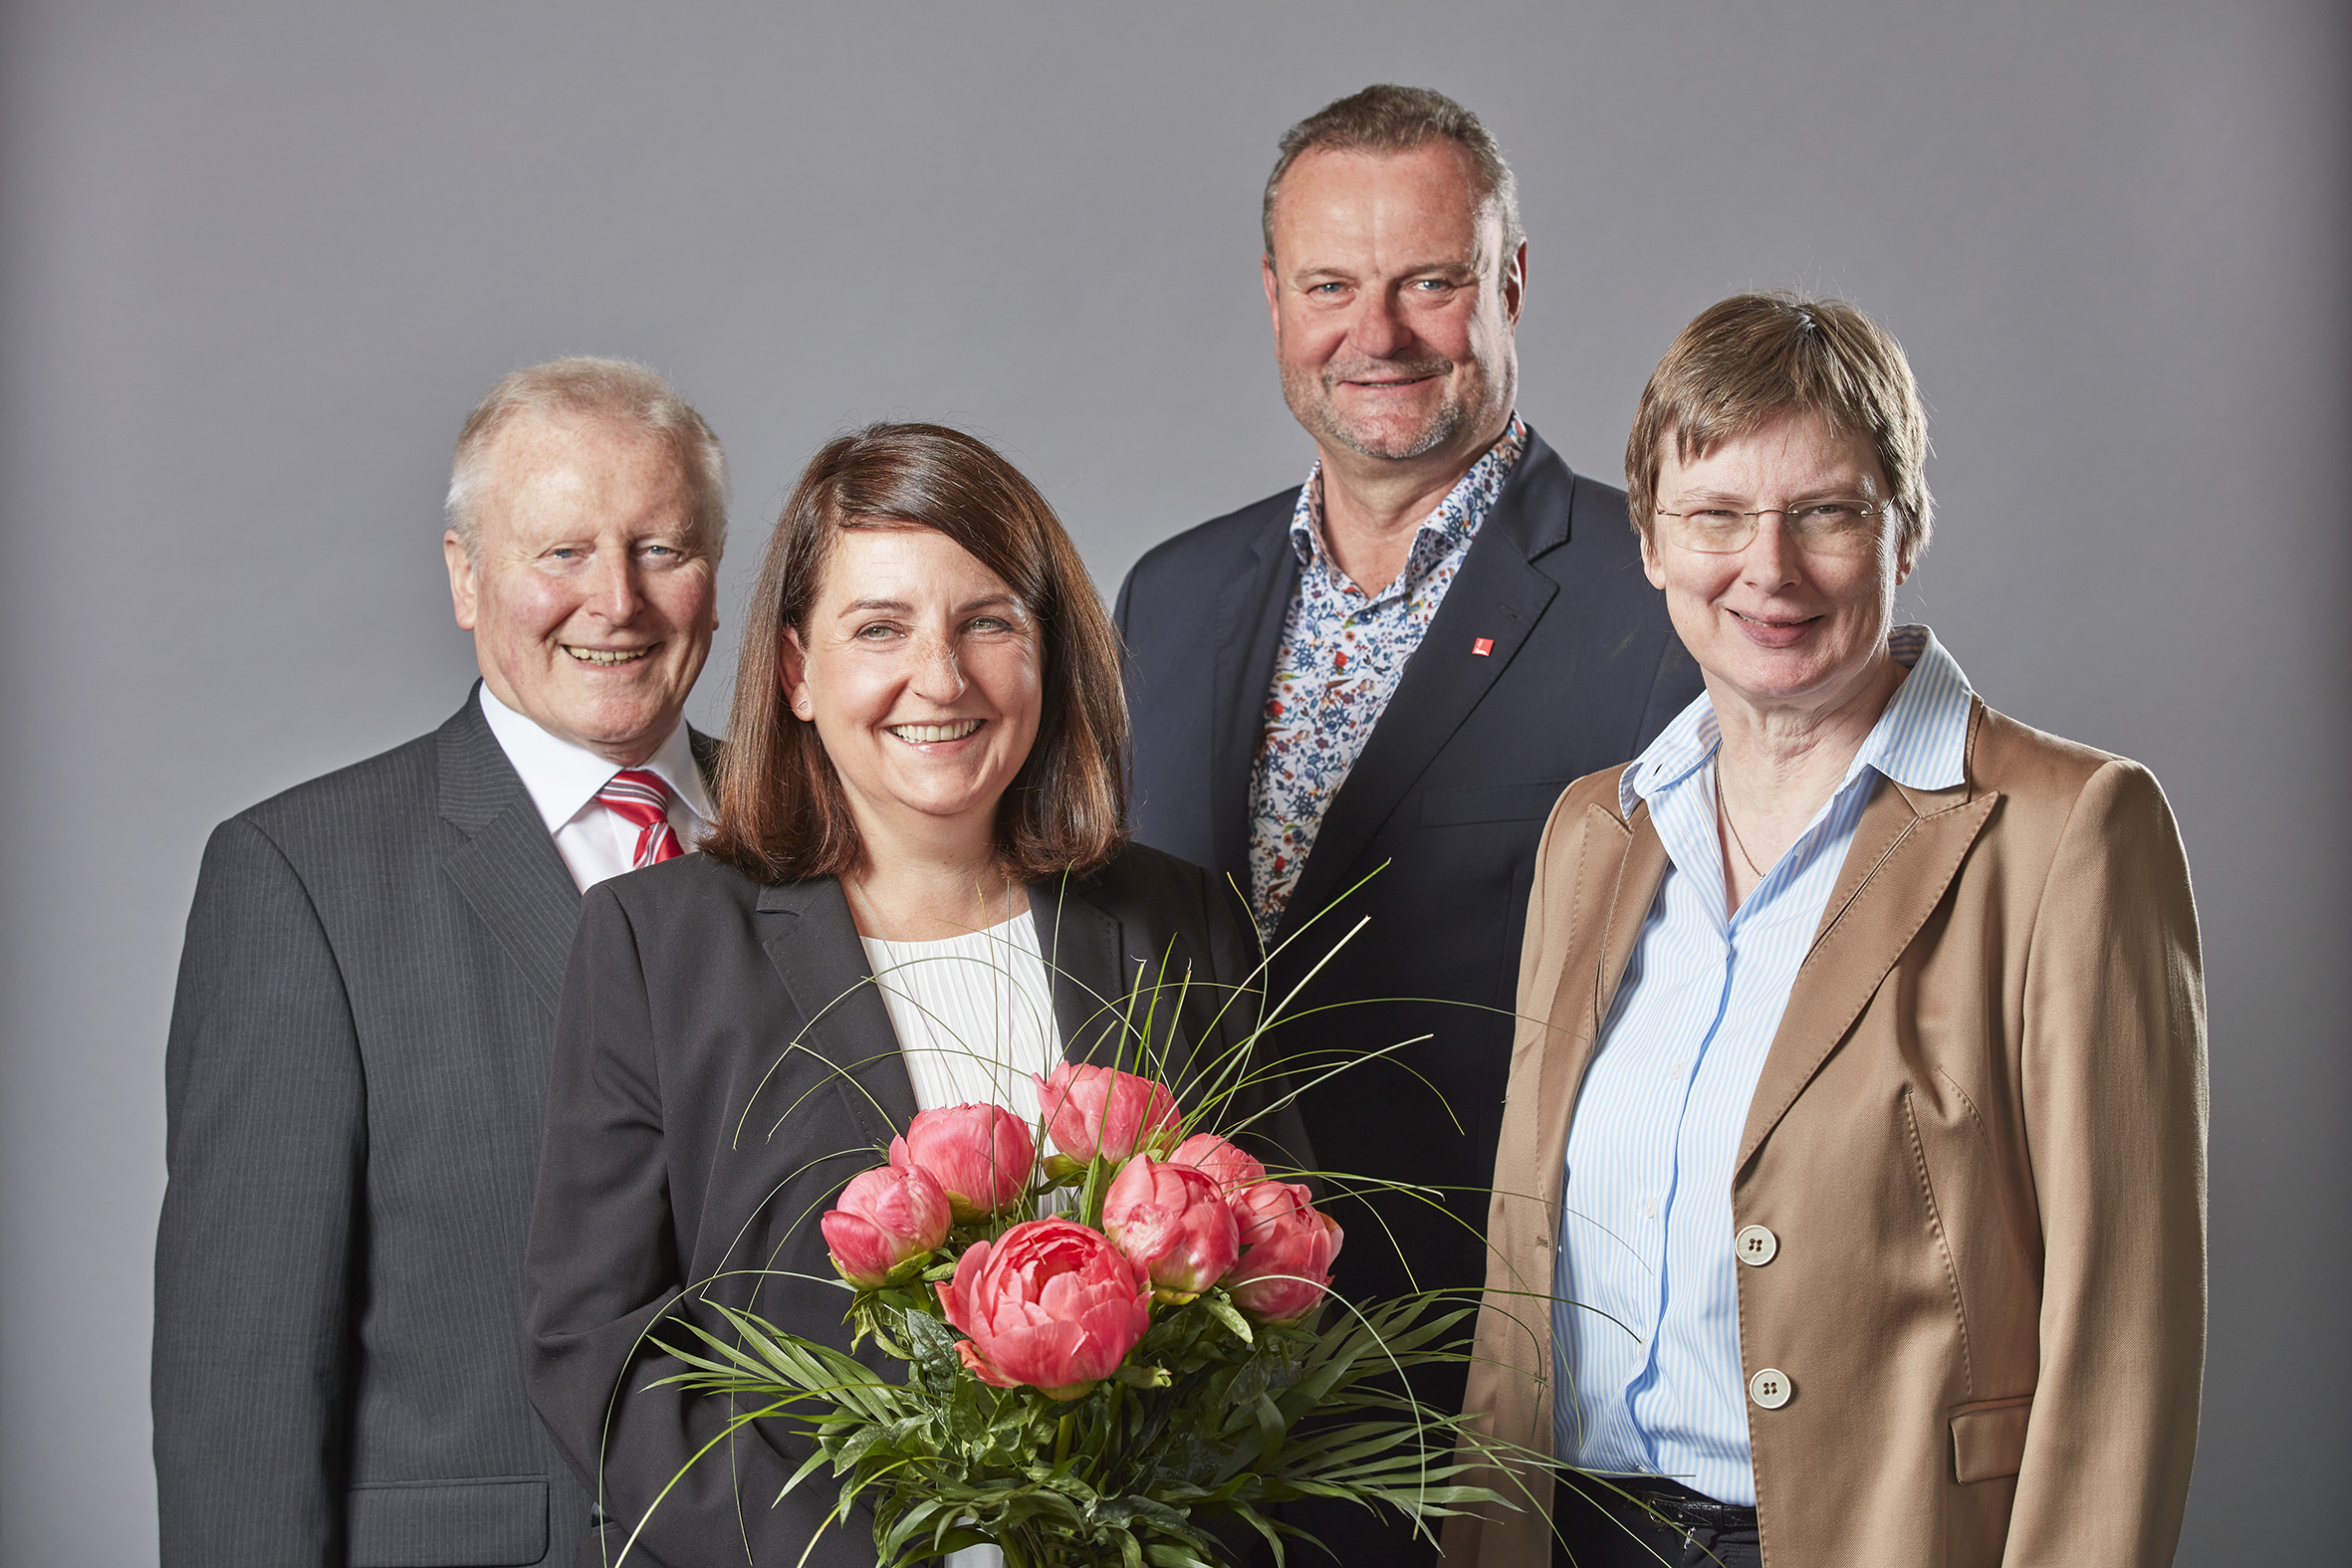 Gruppenbild von links nach recht: Klaus Peter Röskes, Karin Tanger, Hanno Harms, Sabine Kudzielka